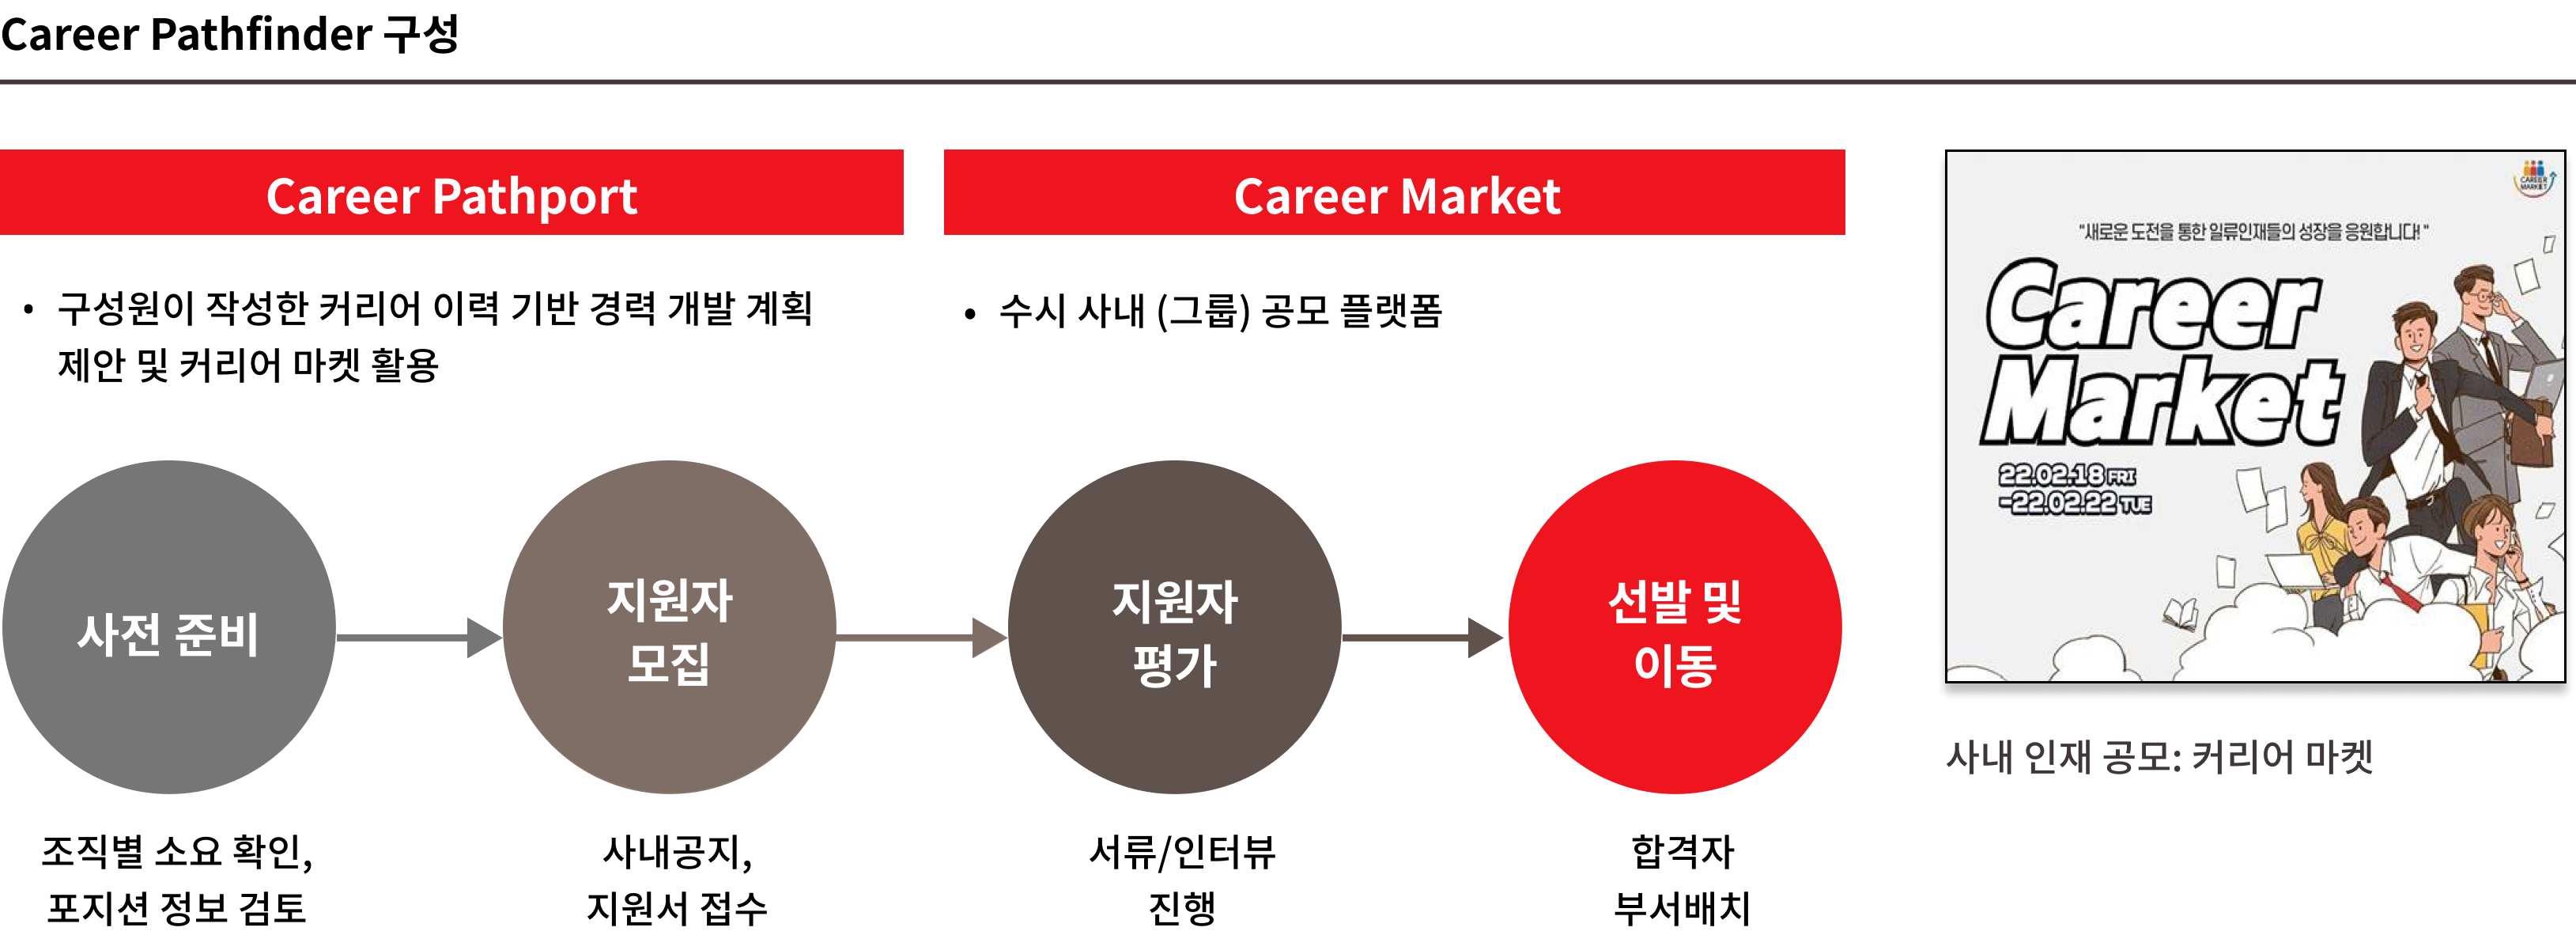 Career Pathport : 구성원이 작성한 커리어 이력 기반 경력 개발 계획 제안 및 커리어 마켓 활용. Career Market : 수시 사내 (그룹) 공모 플랫폼. 사전준비(조직별 소요 확인, 포지션 정보 검토) → 지원자 모집(사내공지, 지원서 접수)  → 지원자 평가(서류/인터뷰 진행)  → 선발 및 이동(합격자 부서배치)